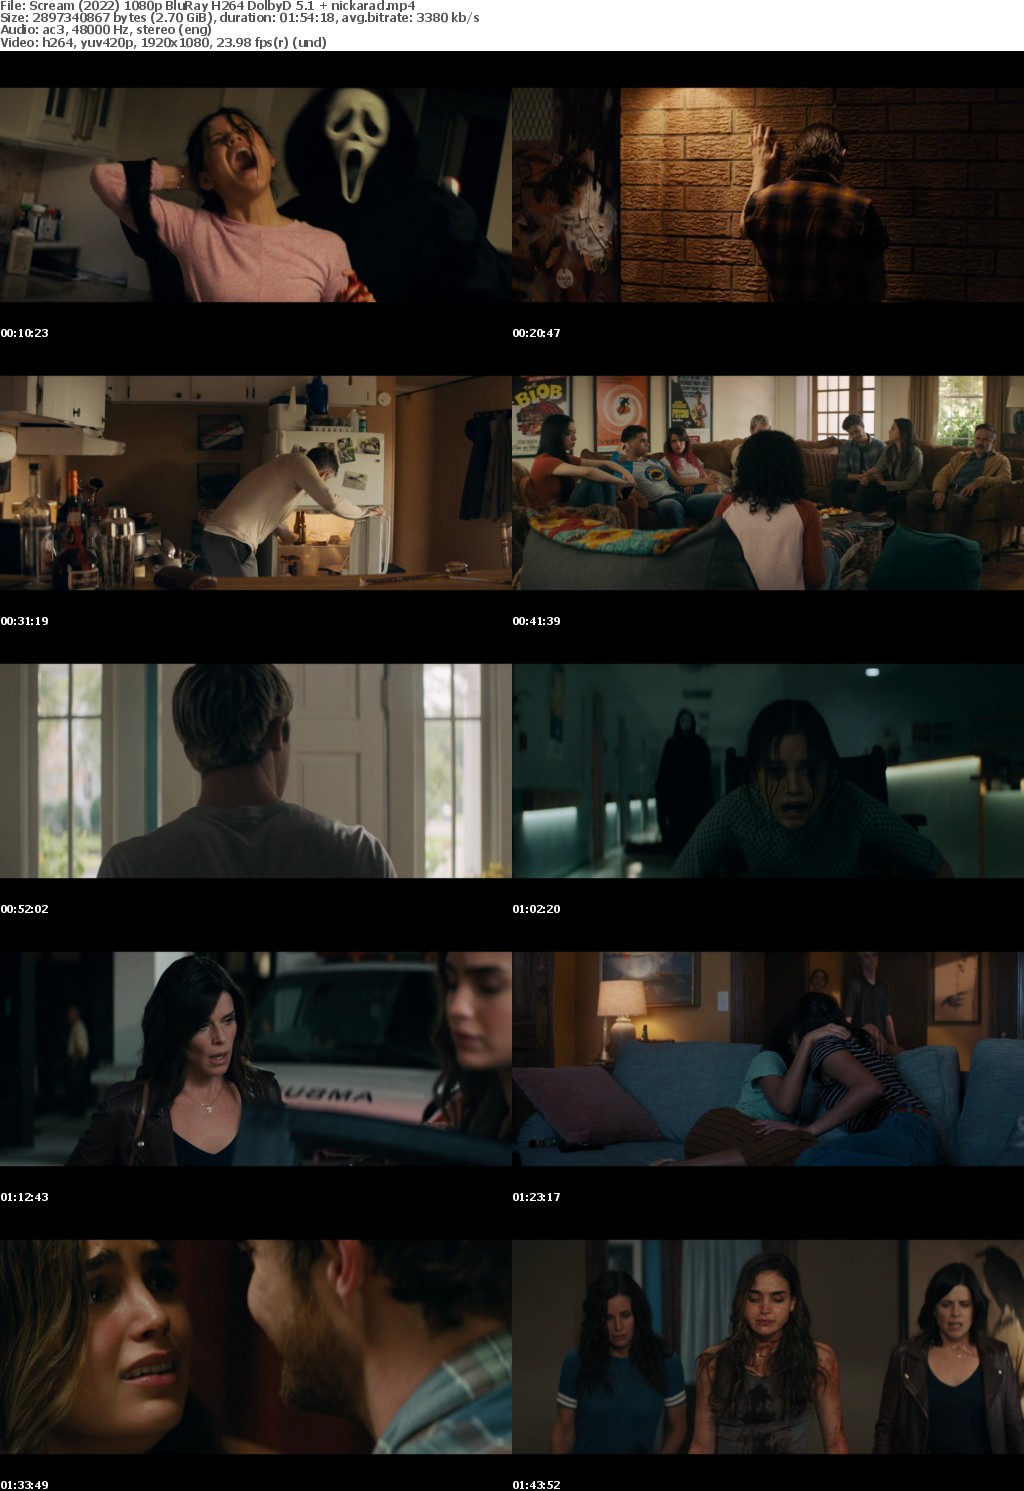 Scream (2022) 1080p BluRay H264 DolbyD 5 1 nickarad